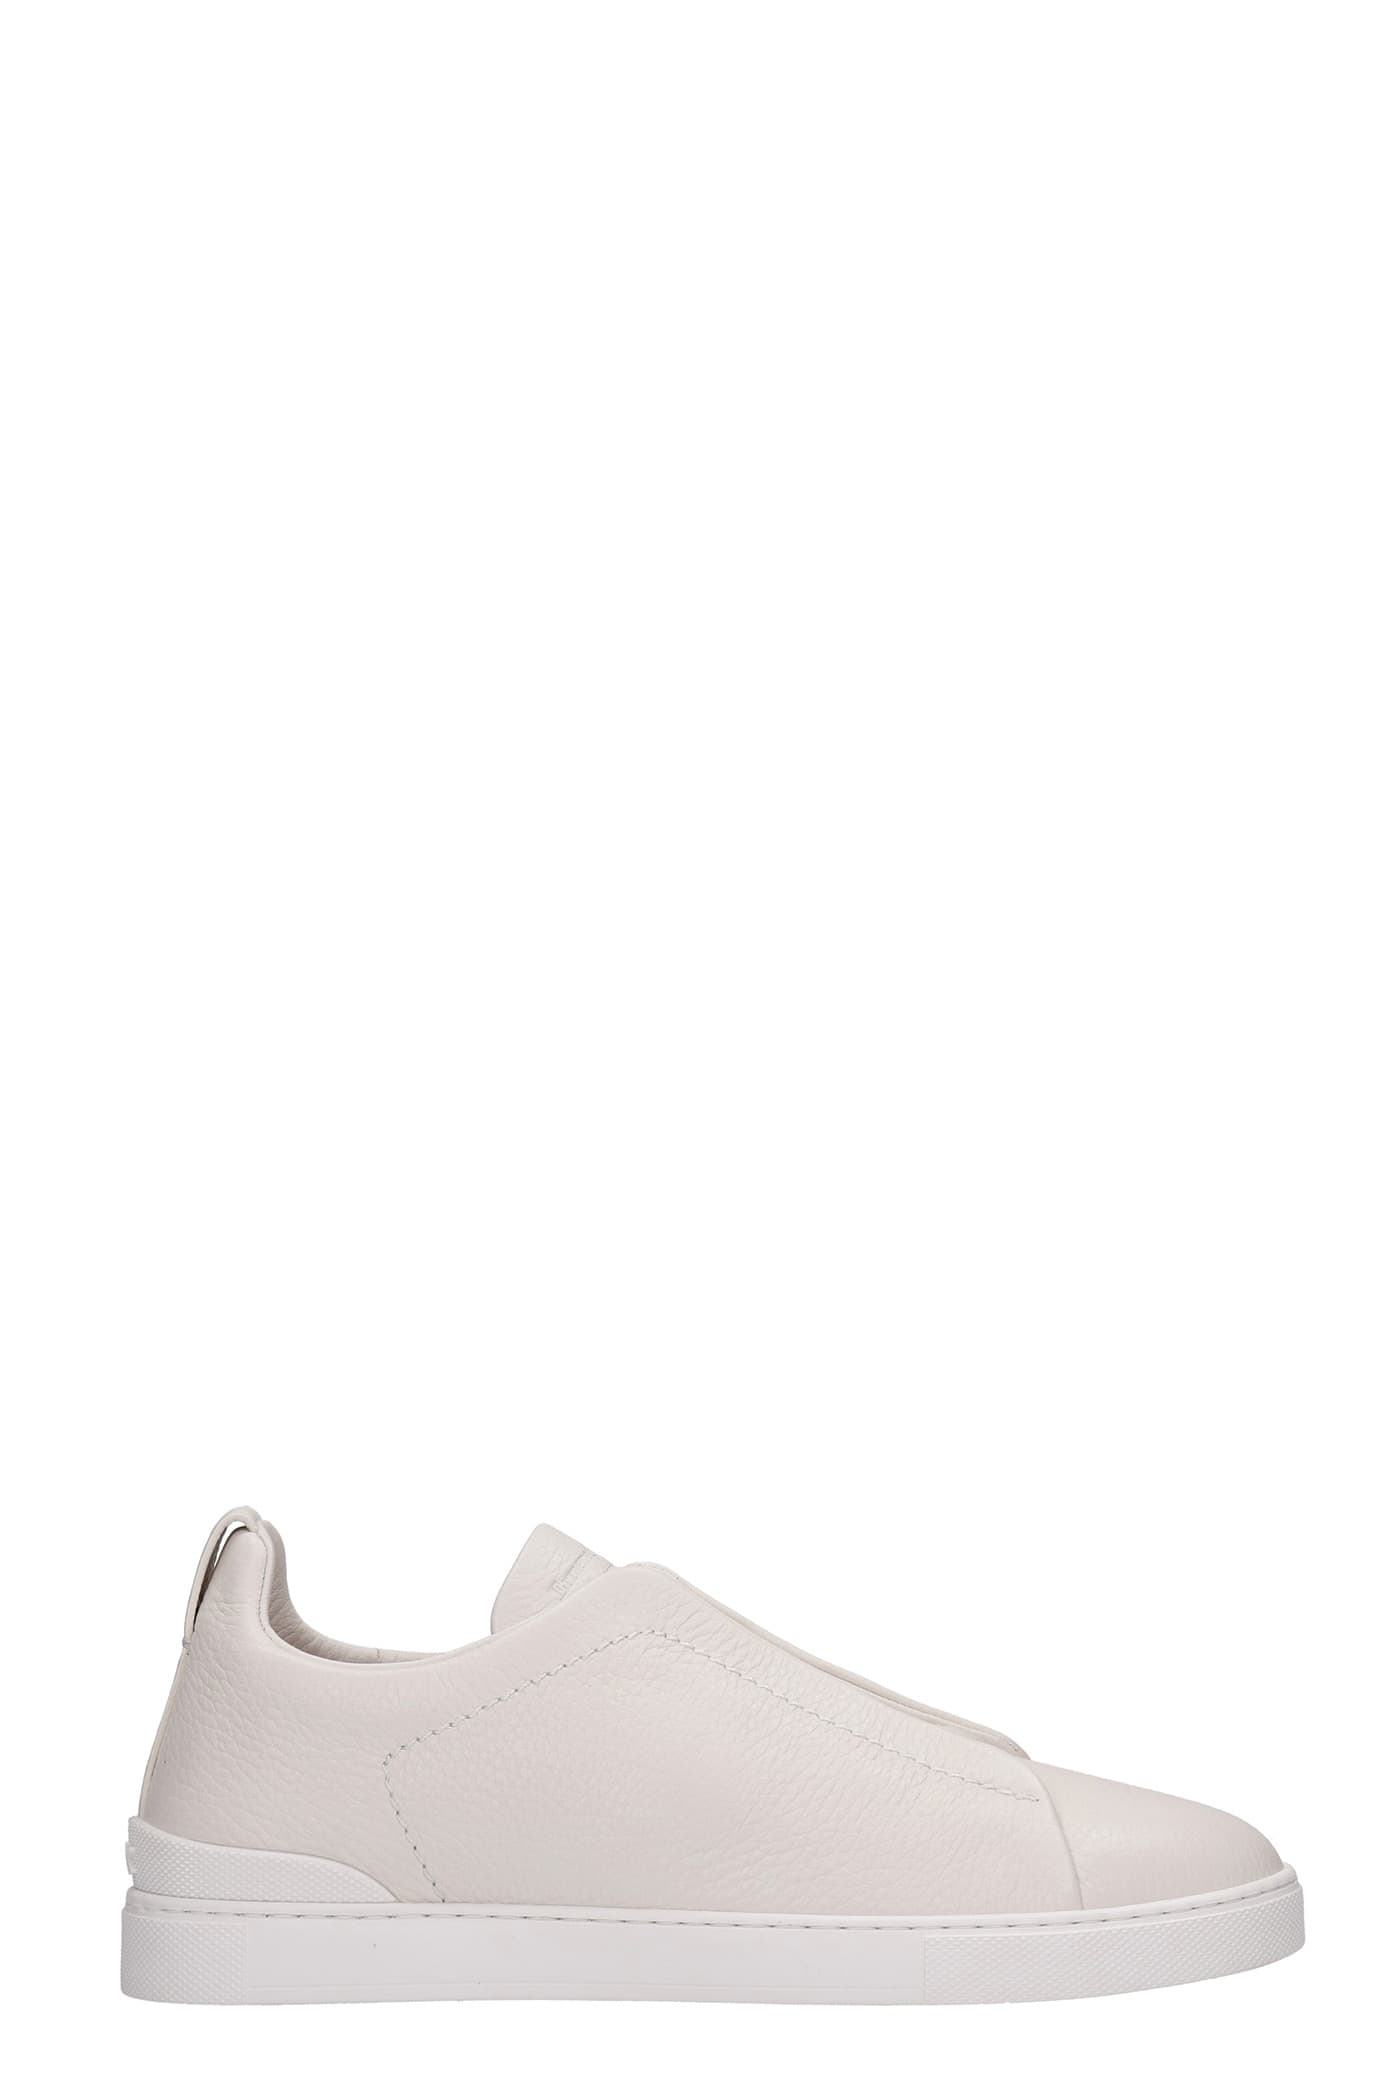 Ermenegildo Zegna Triple Stich Sneakers In White Leather